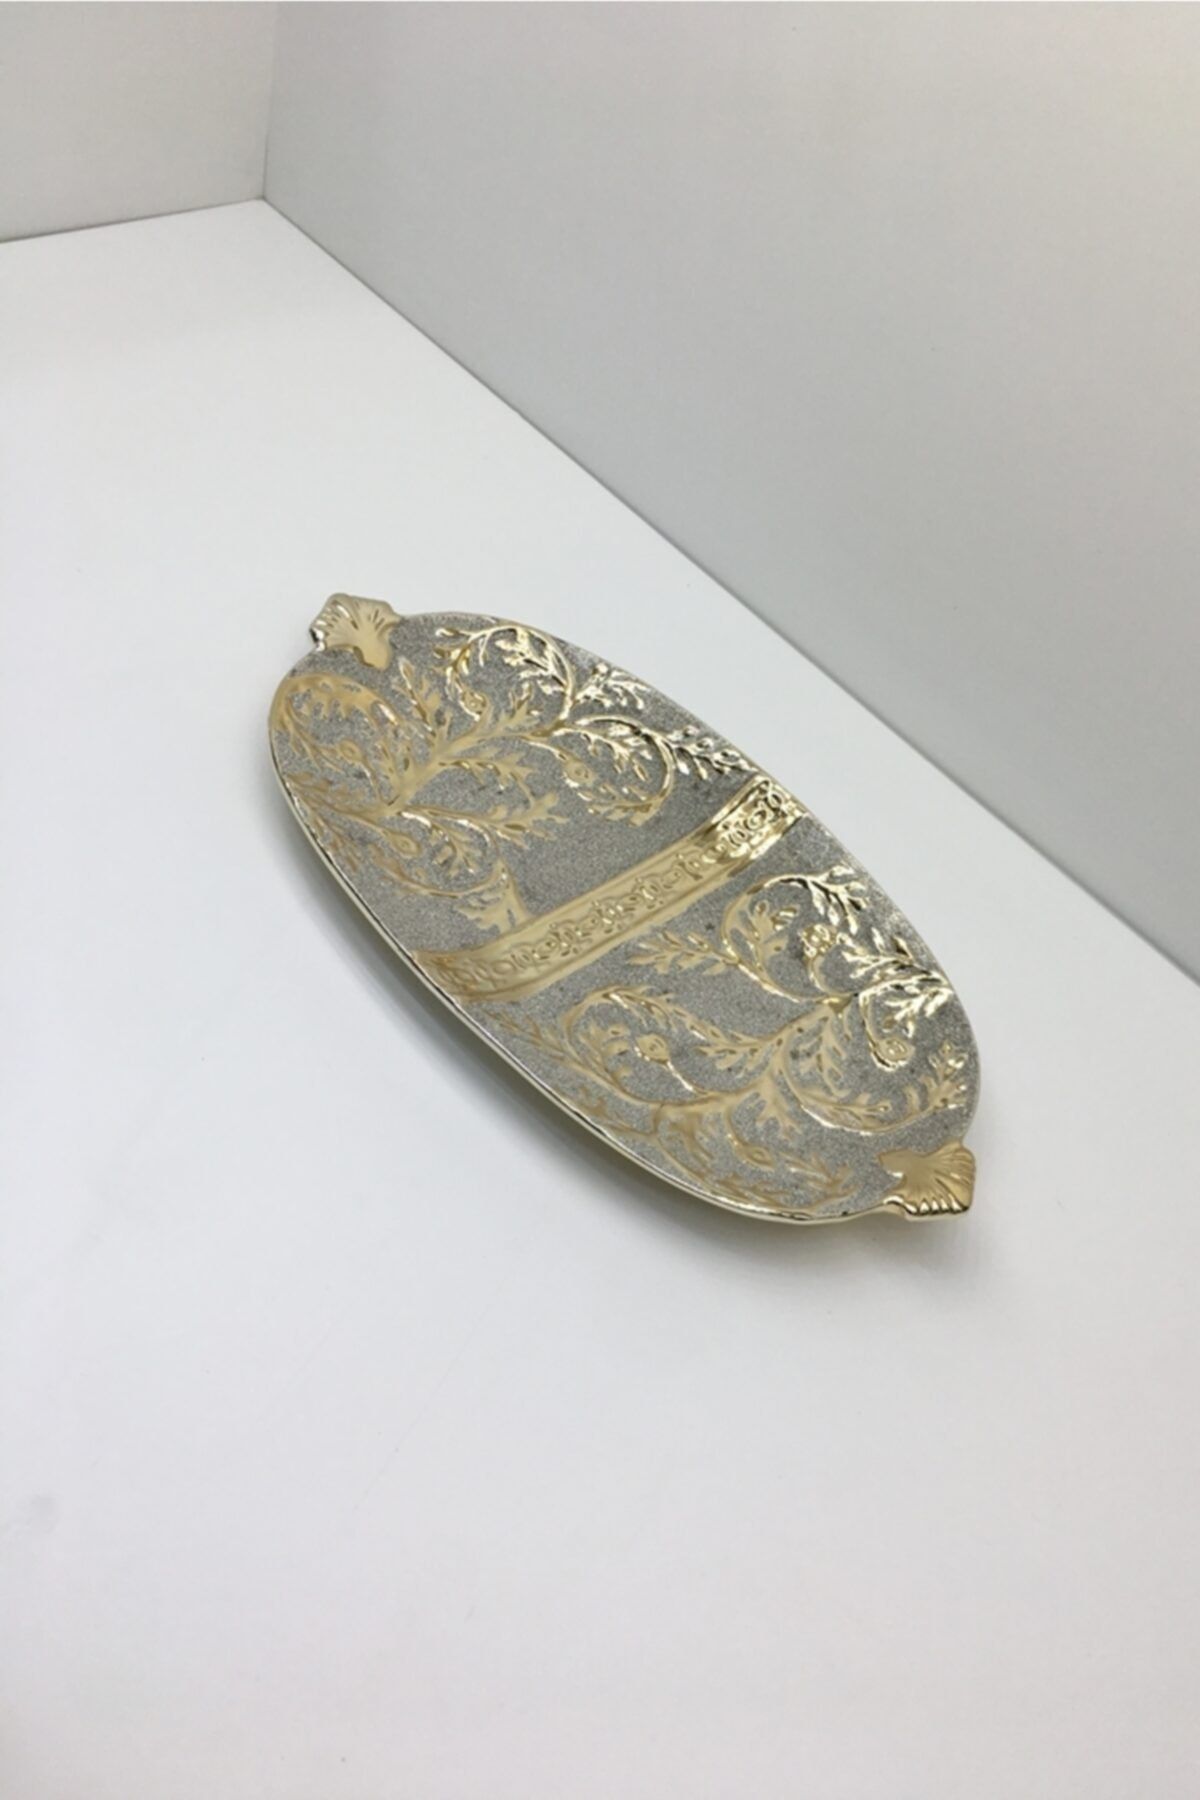 Otantik Dekoratif Porselen Kumlu Altın Tepsi Tabak Obje 3x34x18